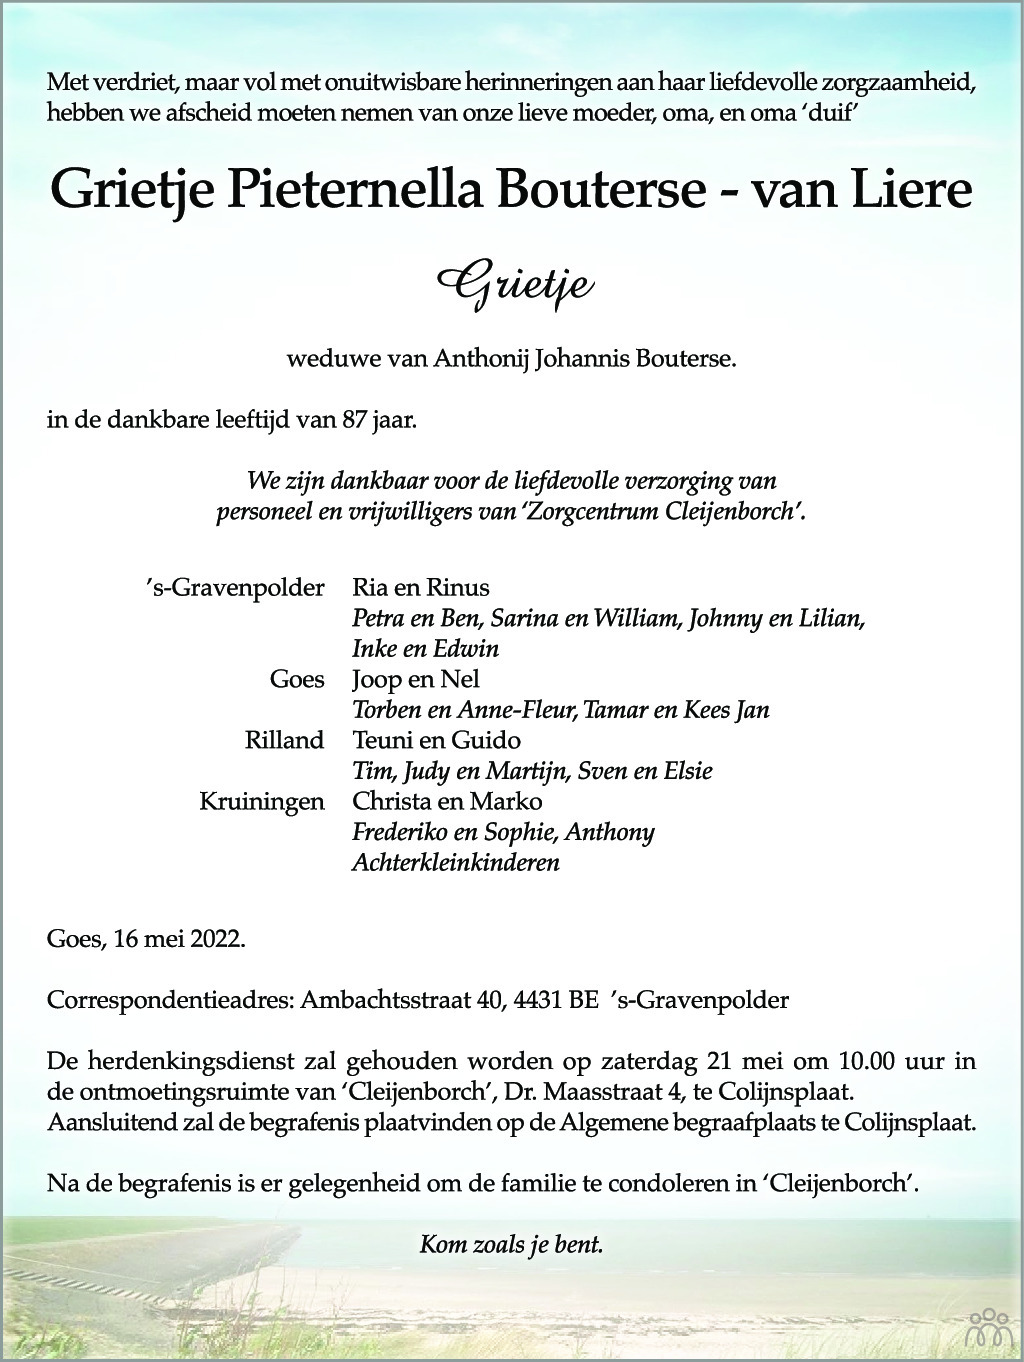 Overlijdensbericht van Grietje Pieternella Bouterse-van Liere in PZC Provinciale Zeeuwse Courant